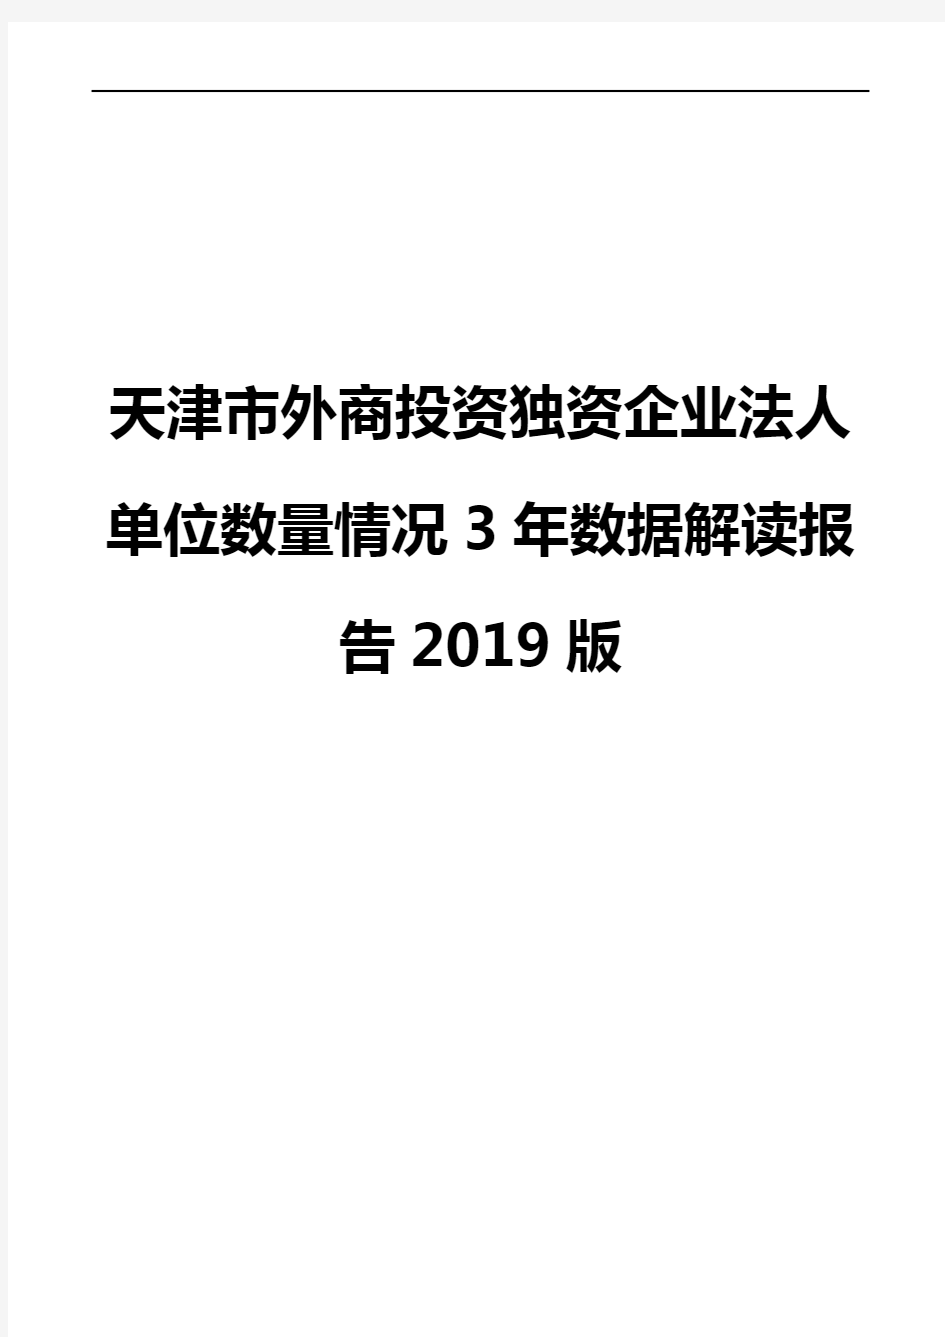 天津市外商投资独资企业法人单位数量情况3年数据解读报告2019版